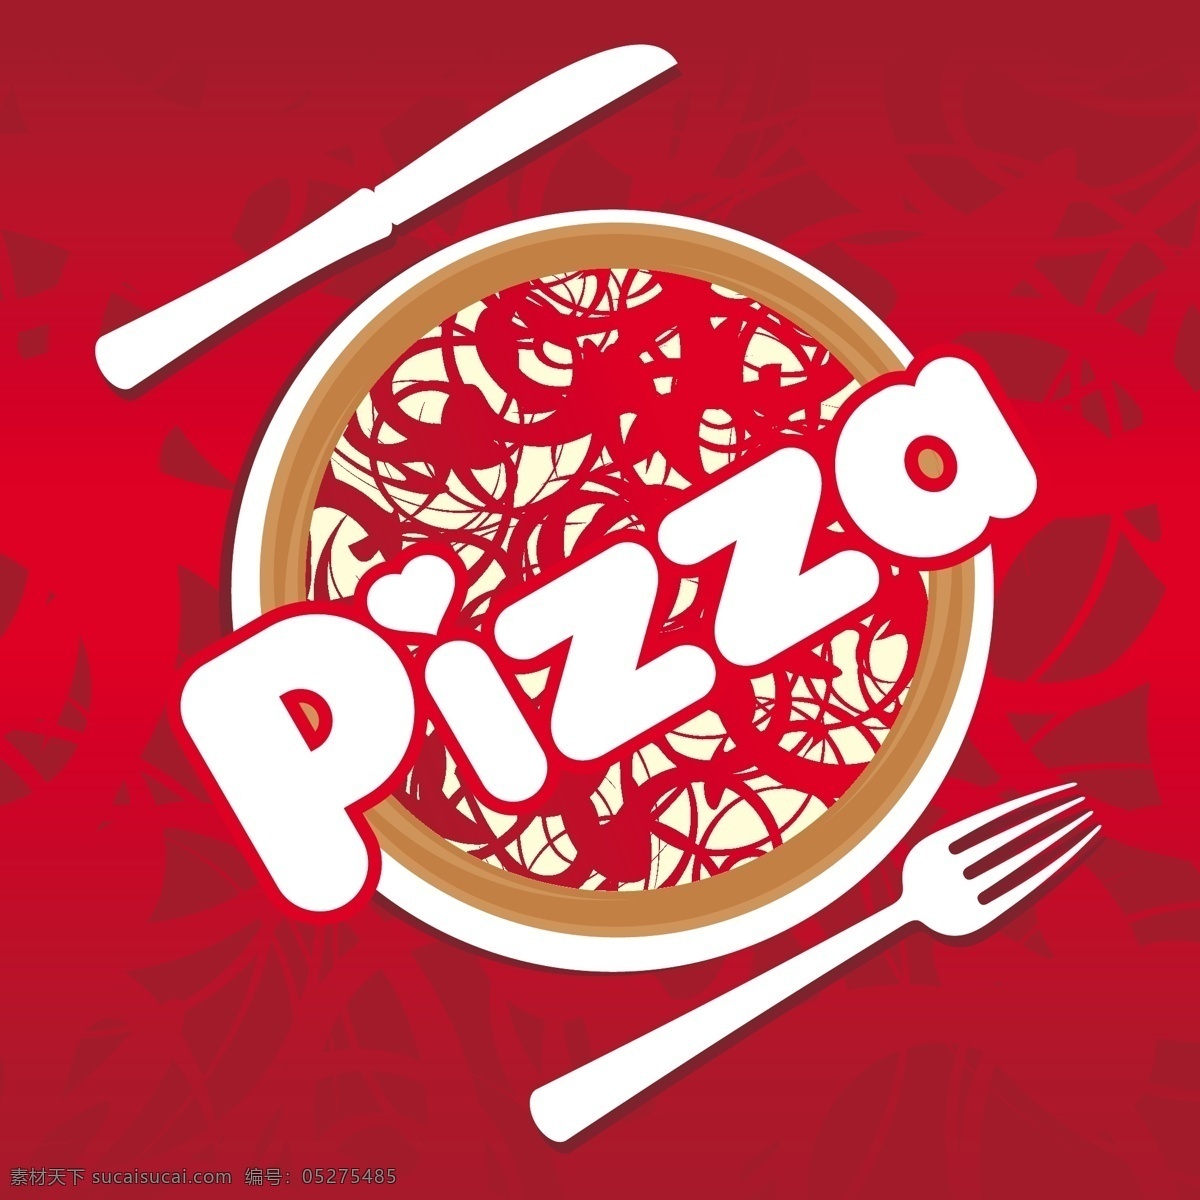 披萨 主题 菜单 矢量 pizza 菜单封面 餐具 创意 刀叉 底纹 封面设计 模板 字母 字体设计 艺术字体 素材元素 设计稿 源文件 矢量图